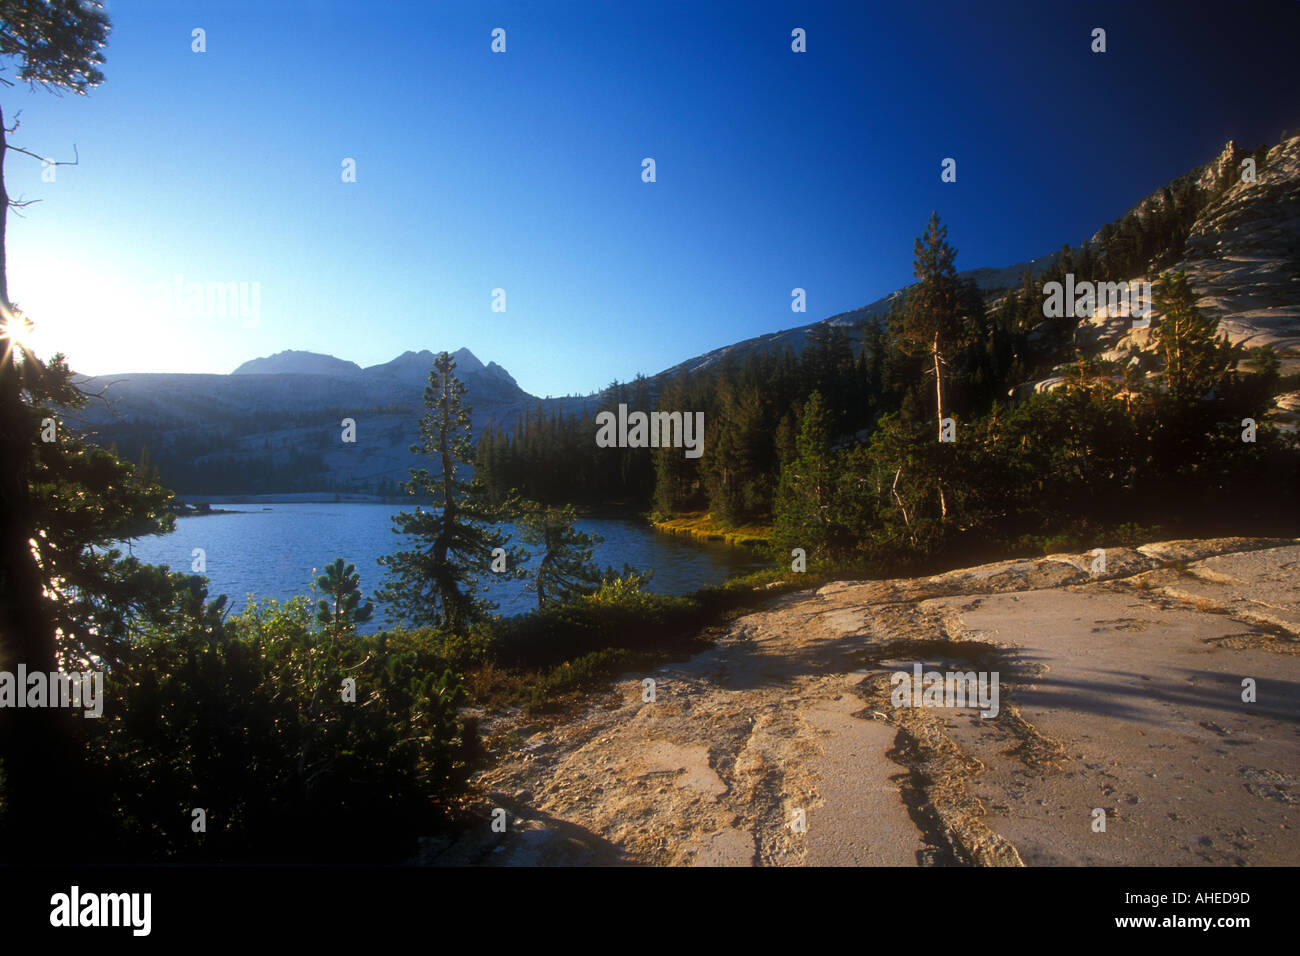 La Cathédrale de 'lac' et 'Cathedral Peak' 'Haute Sierra' 'Yosemite National Park' NP Californie USA Banque D'Images